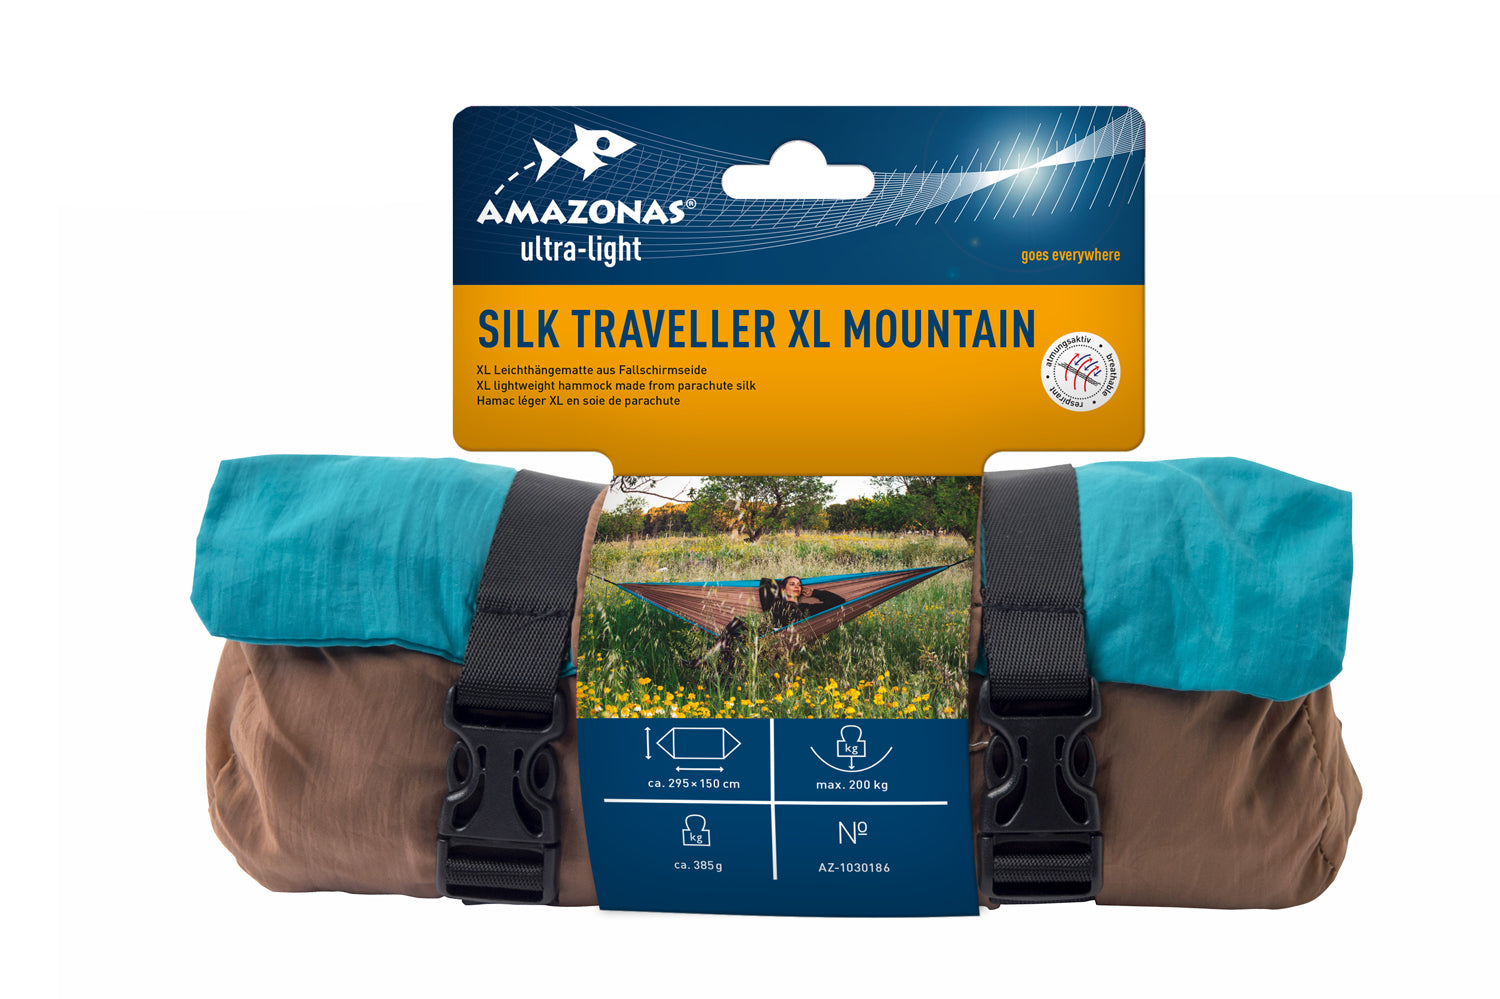 Silk Traveller XL